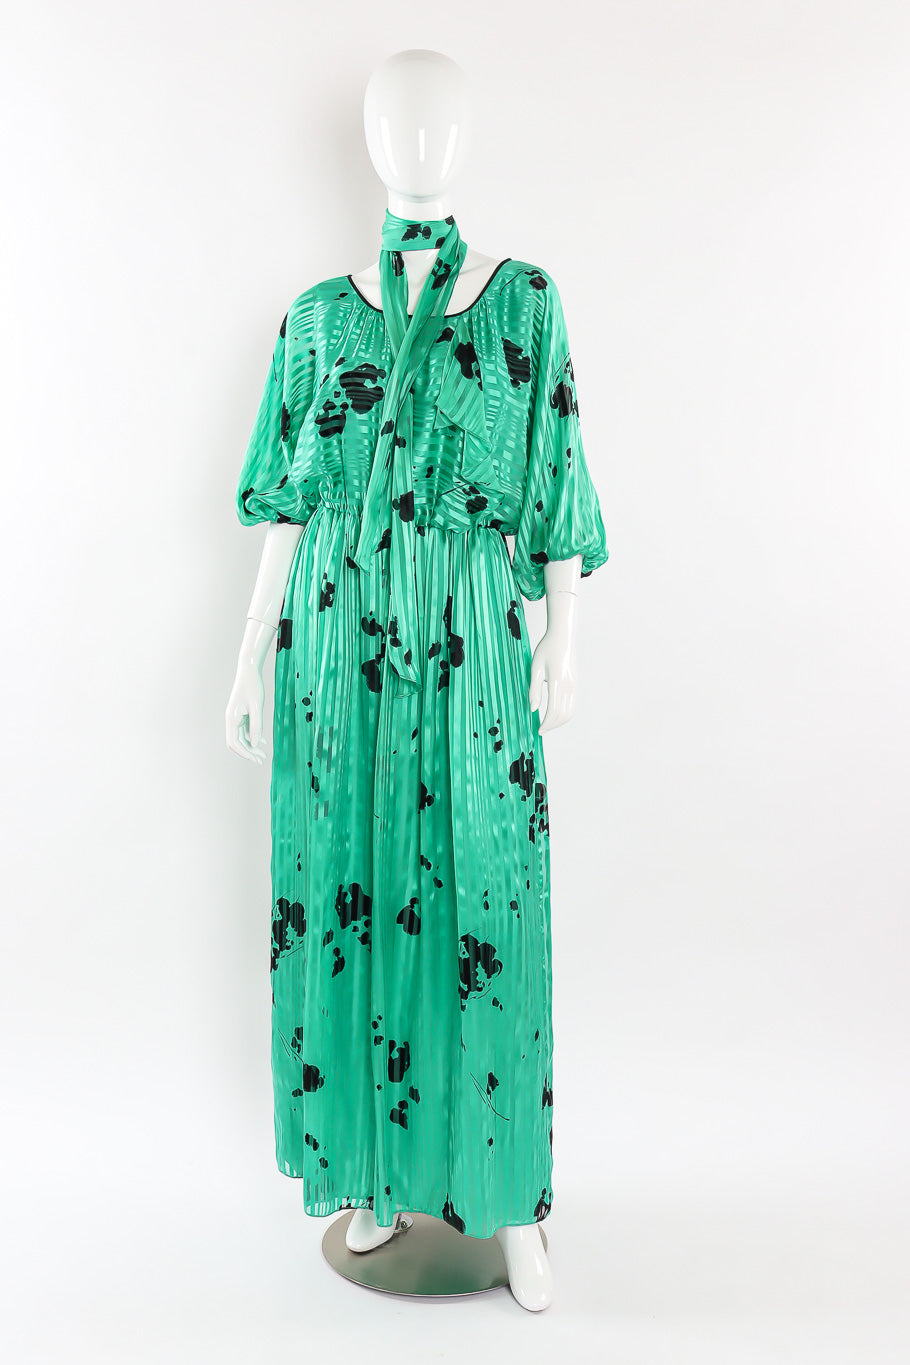 Print silk dress by Hanae Mori front view @recessla